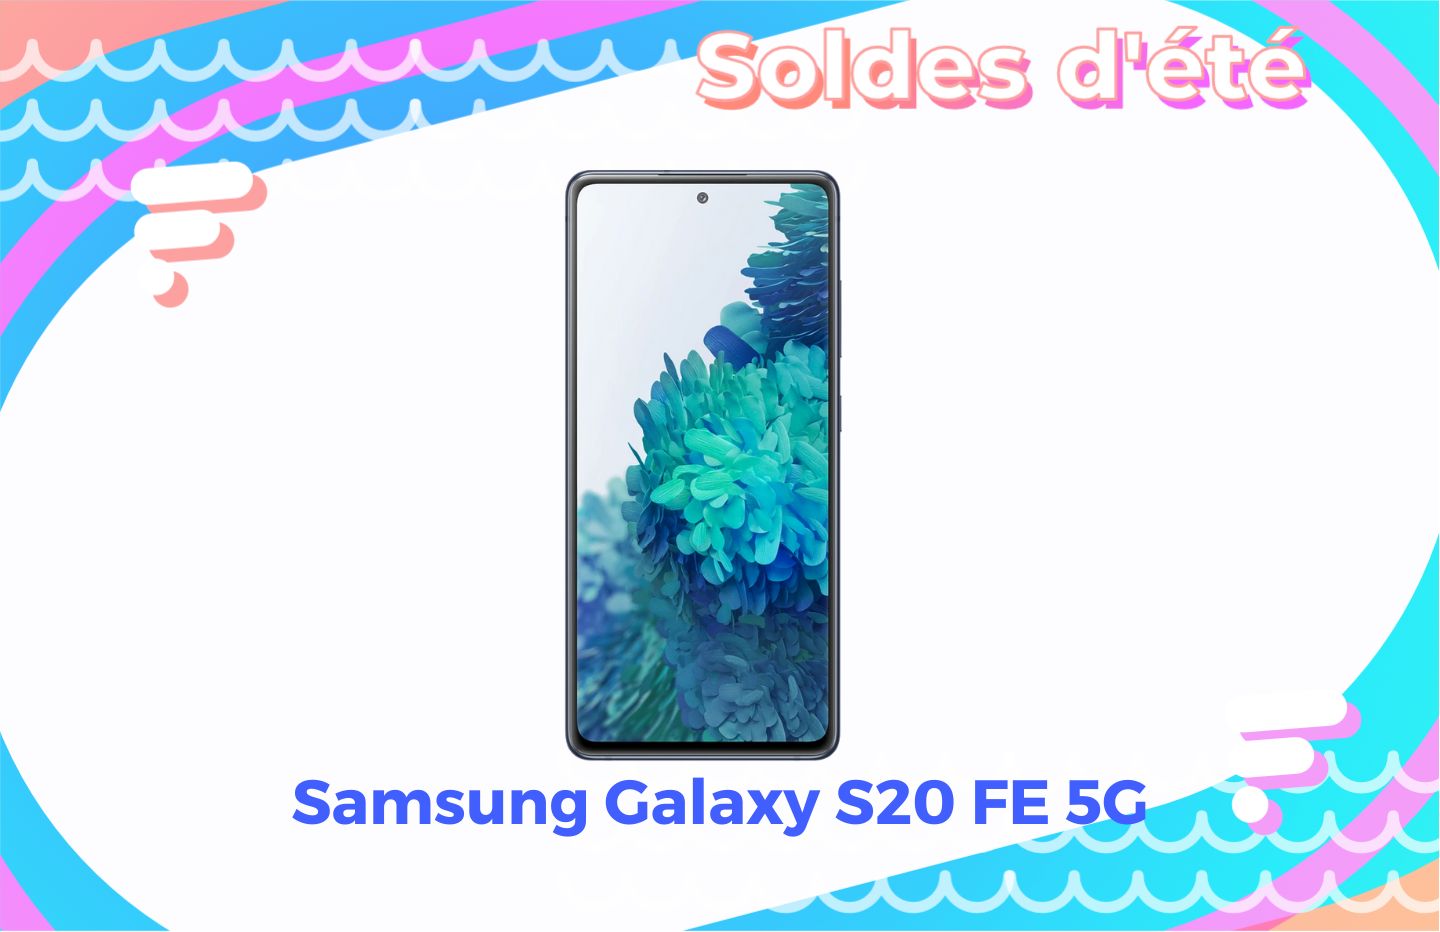 Le prix du Samsung Galaxy S20 FE 5G fond sous le soleil des soldes d’été - Frandroid